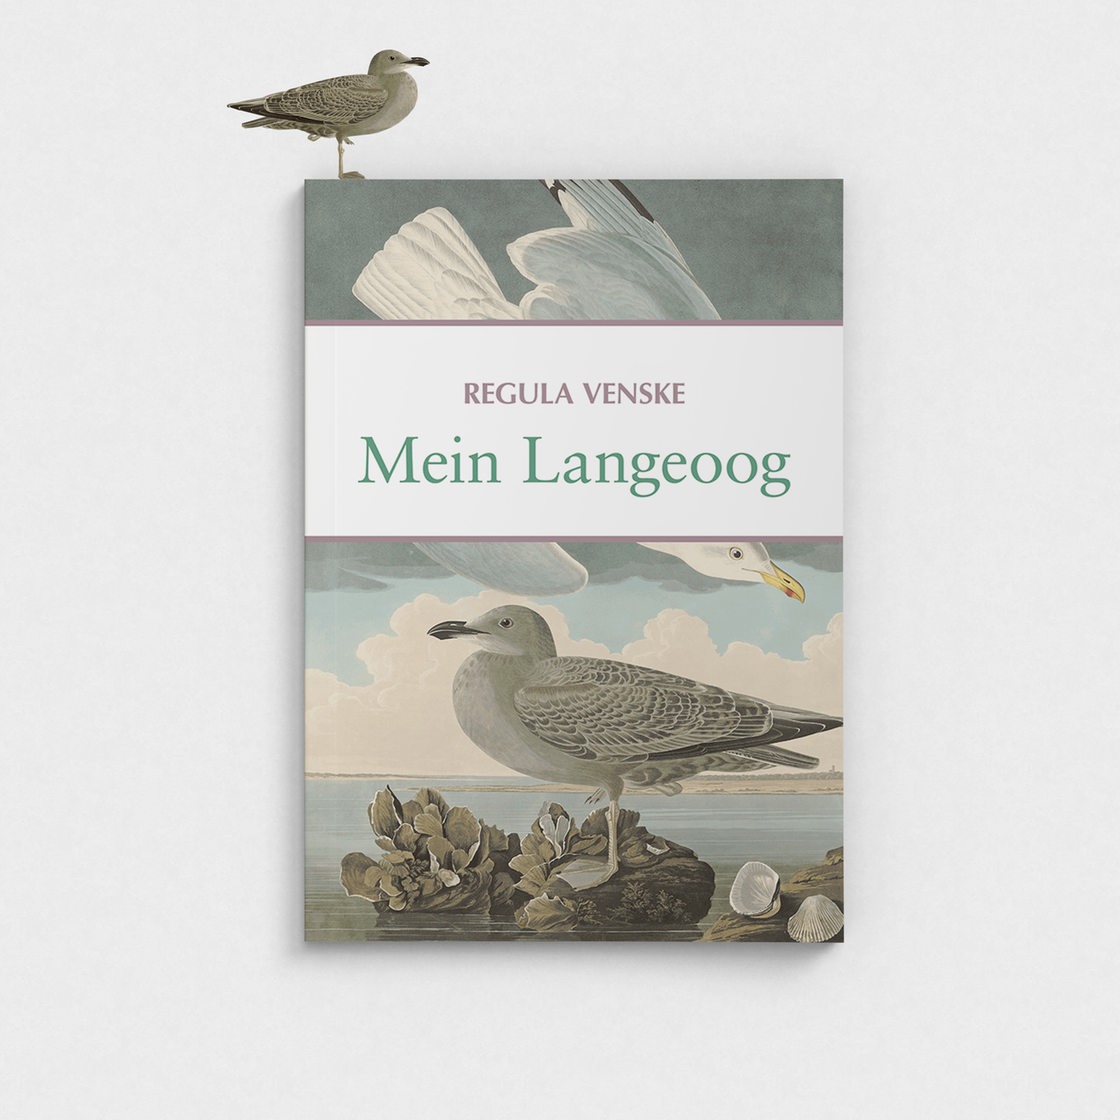 Das Cover des Buchs "Mein Langeoog"